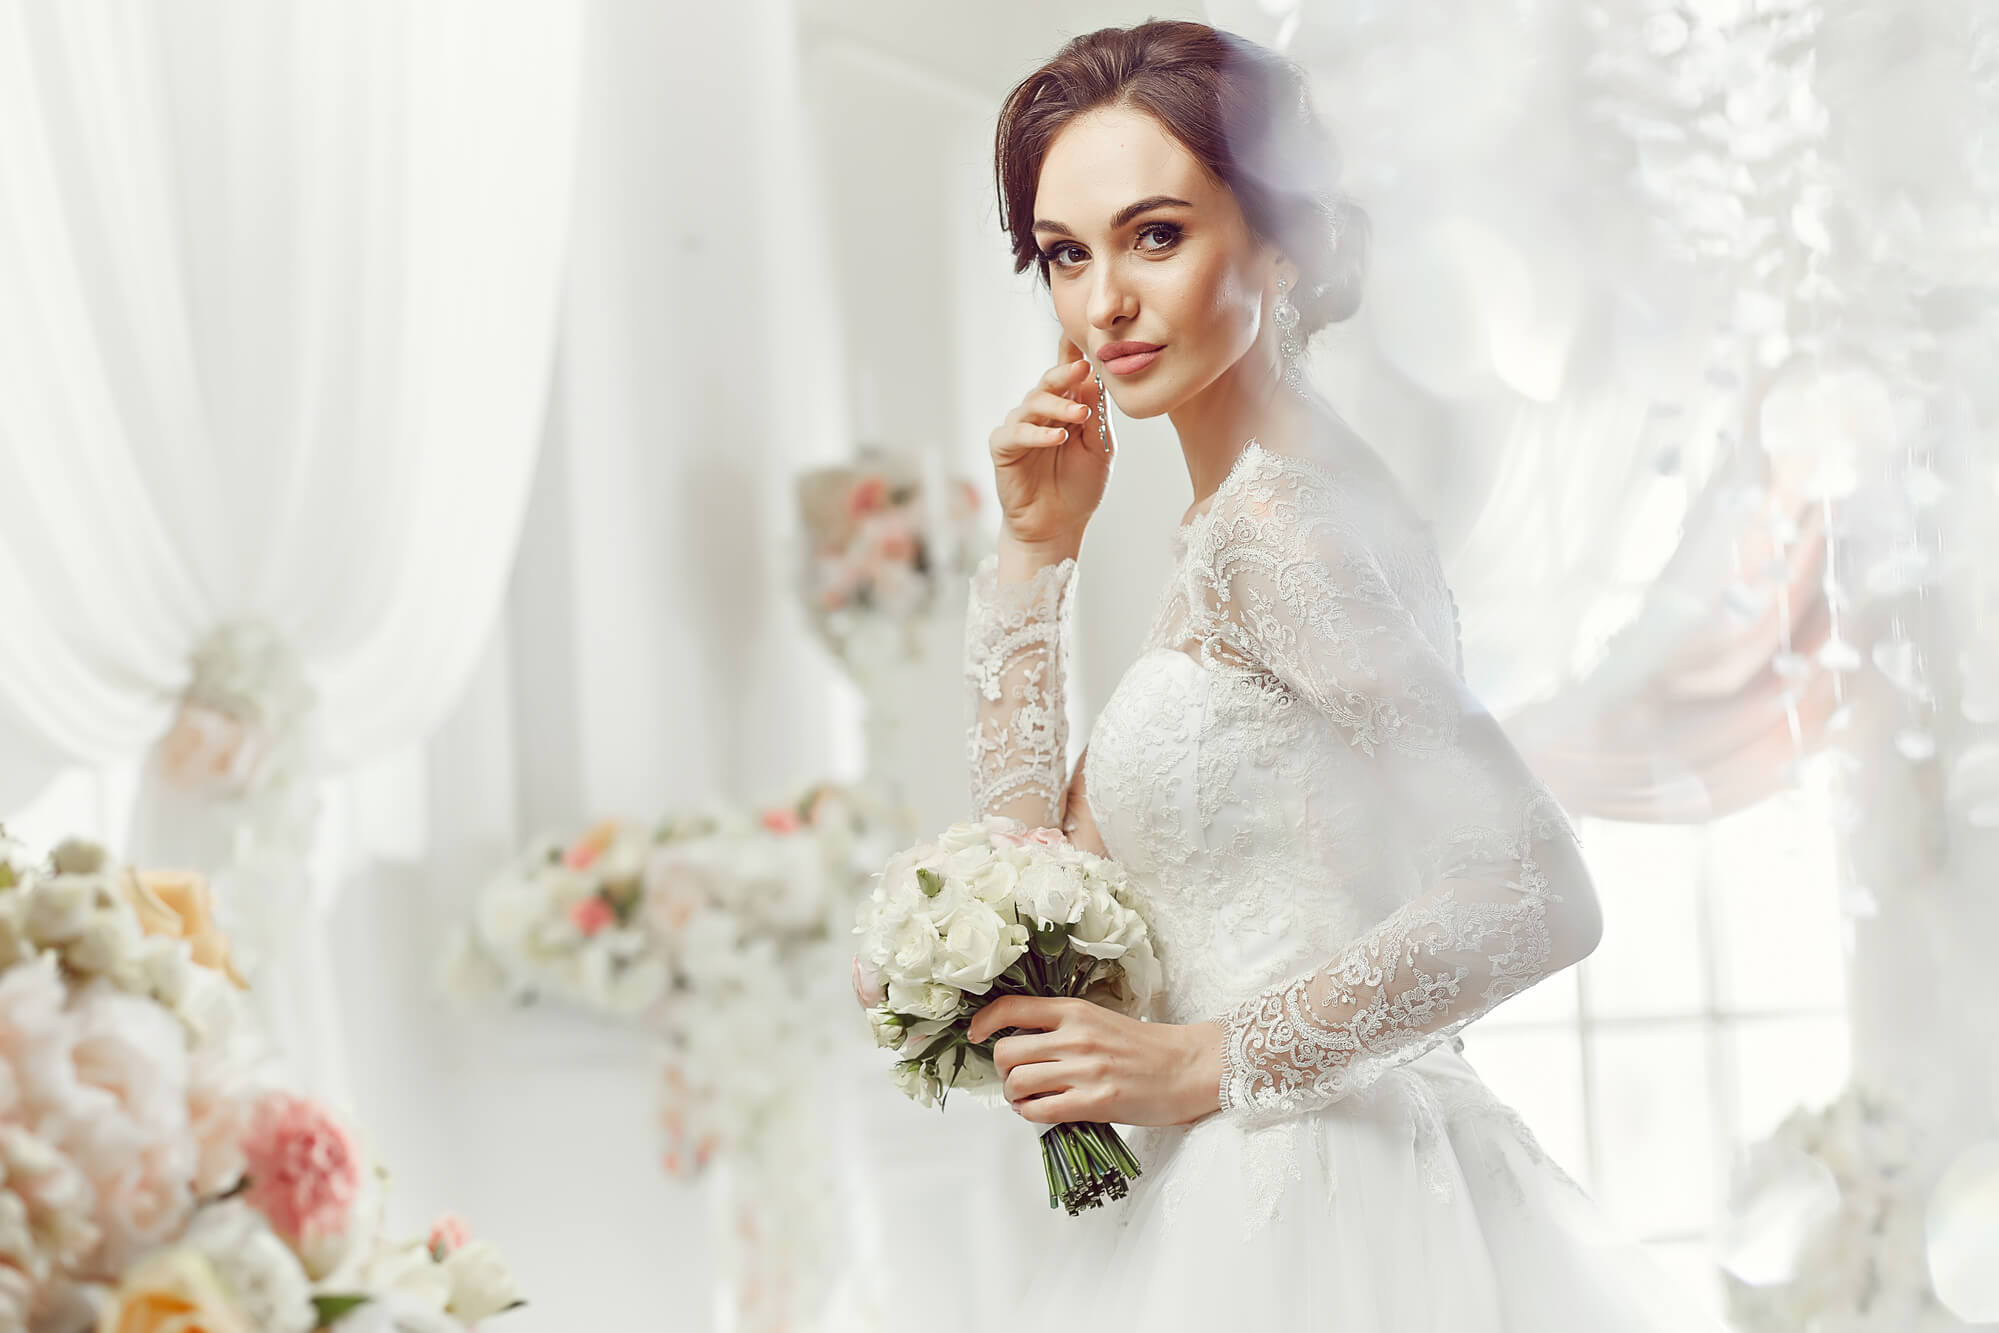 Styled Photo Shoots - Secret Bridal Closet